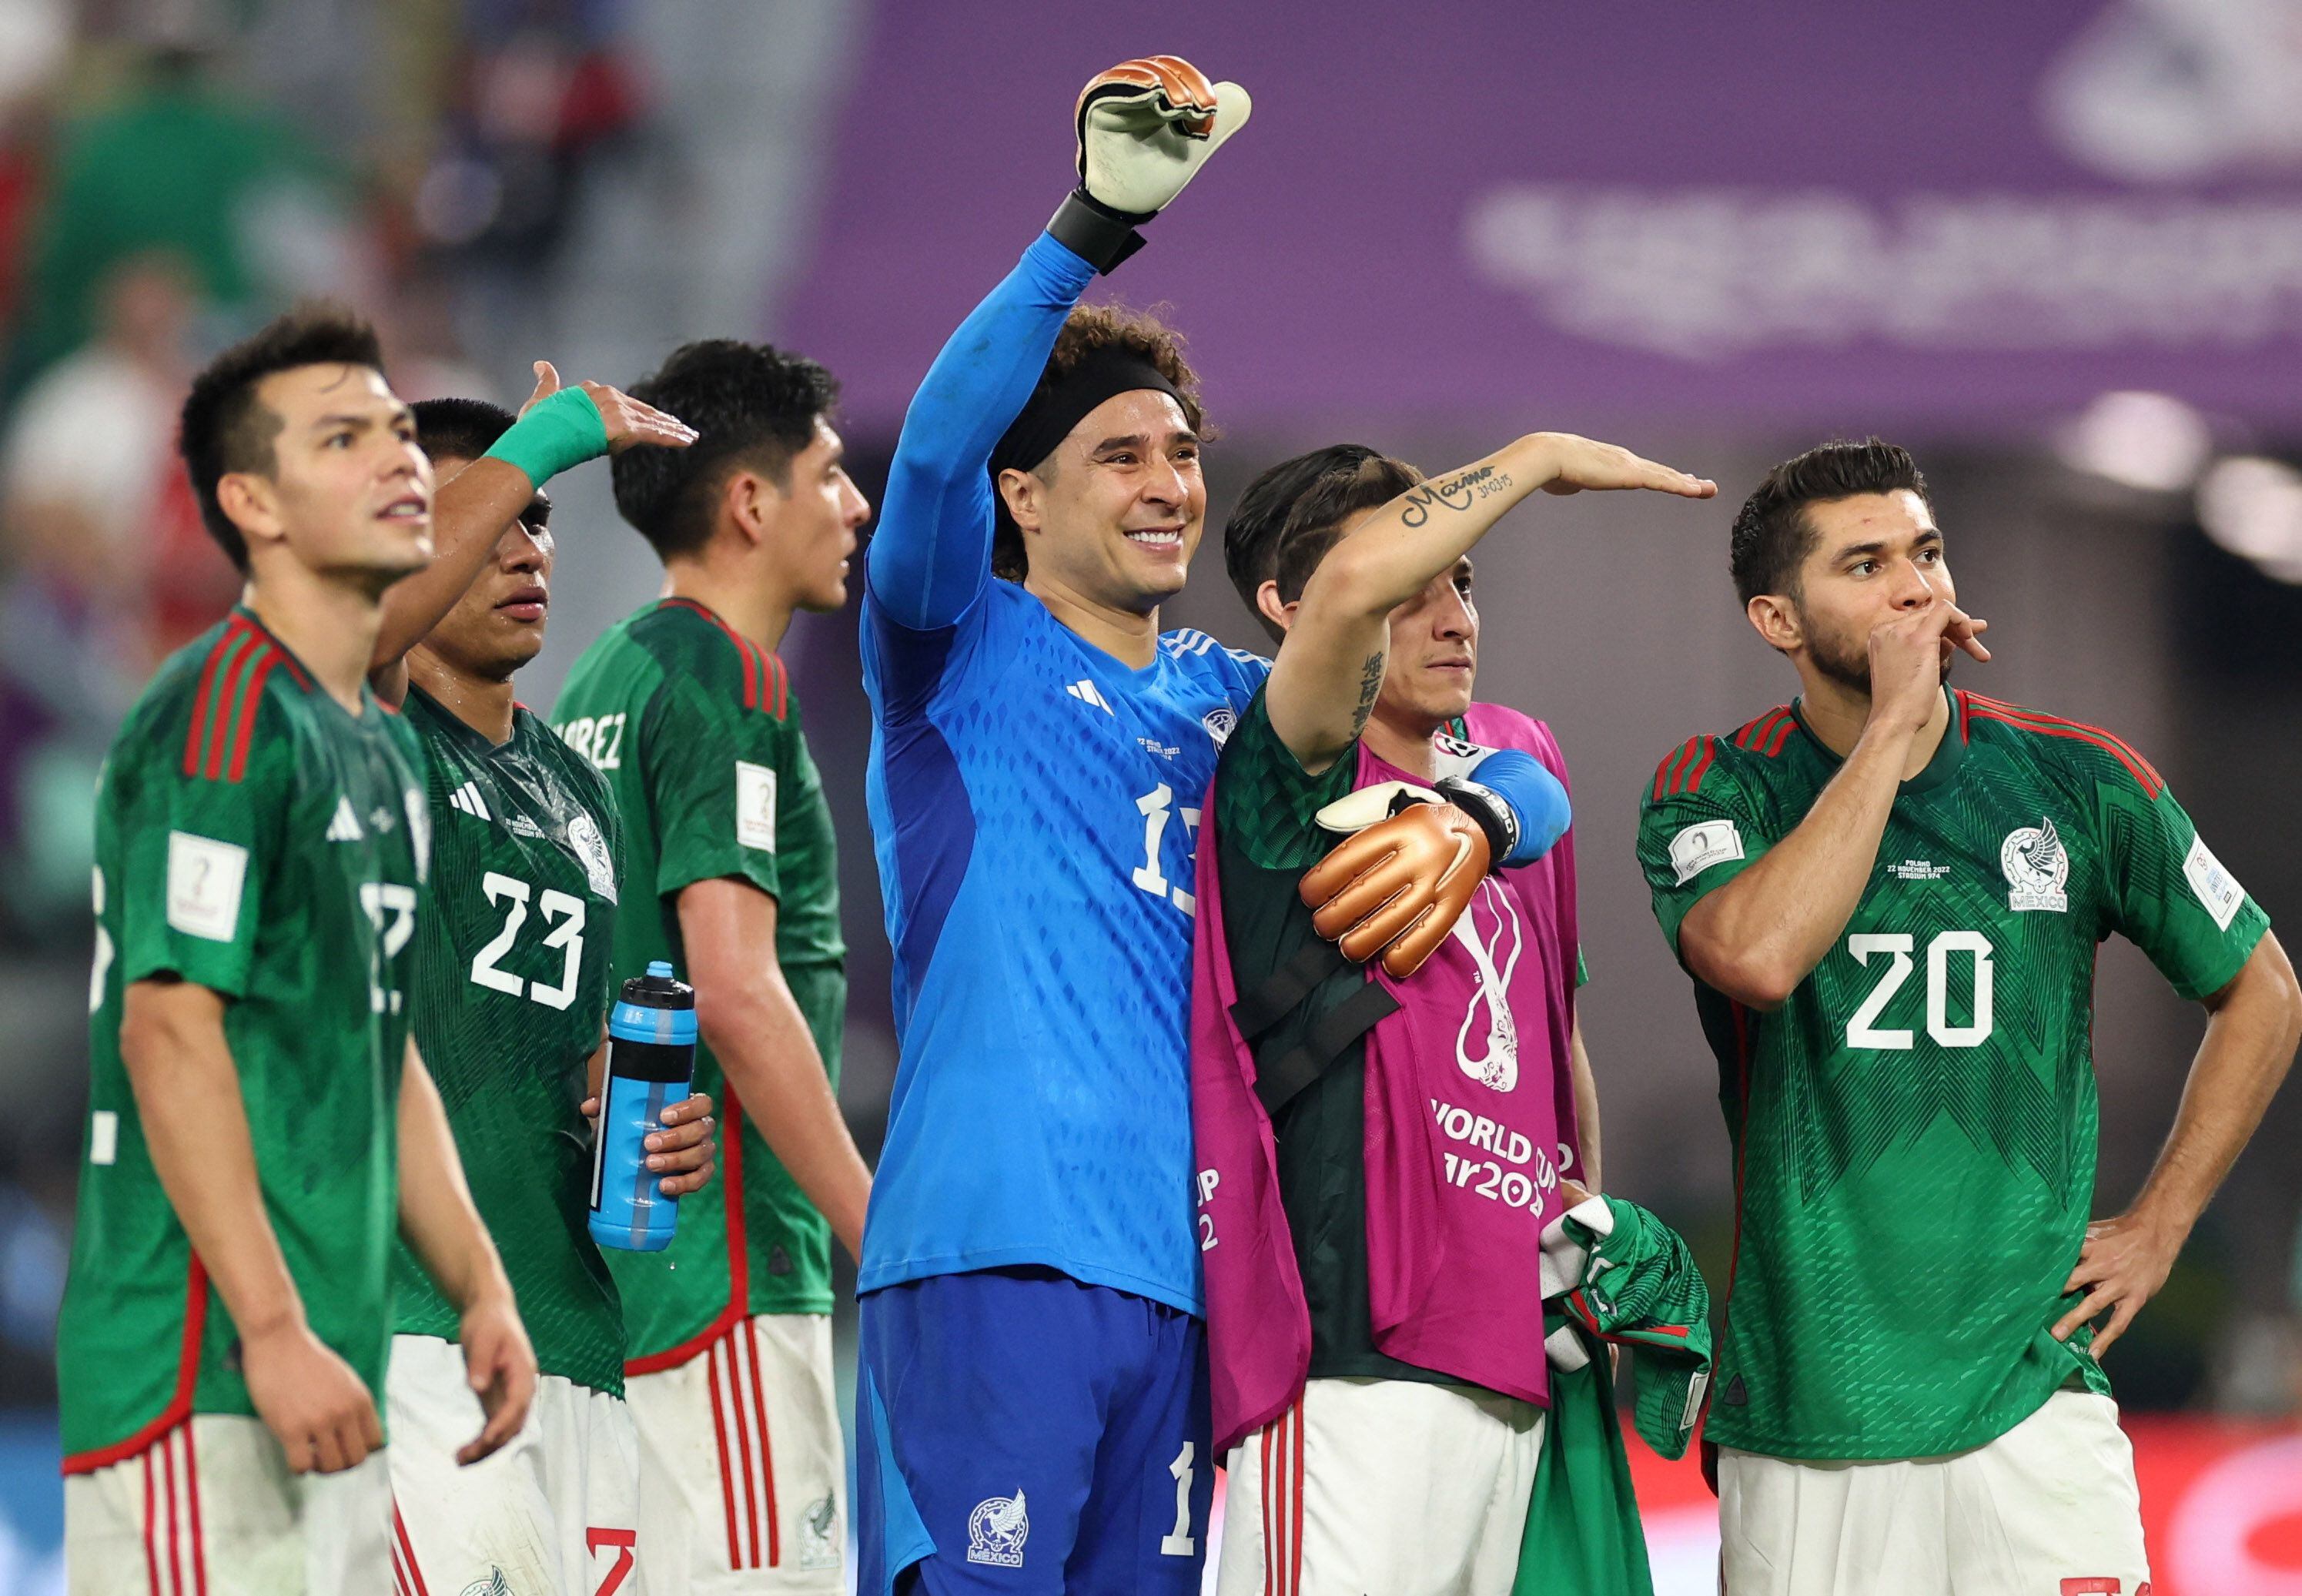 La Selección Mexicana de Fútbol tuvo la oportunidad de encabezar el grupo C tras la derrota de Argentina frente a Arabia Saudita, pero solo consiguieron un punto por empate. (REUTERS/Carl Recine)